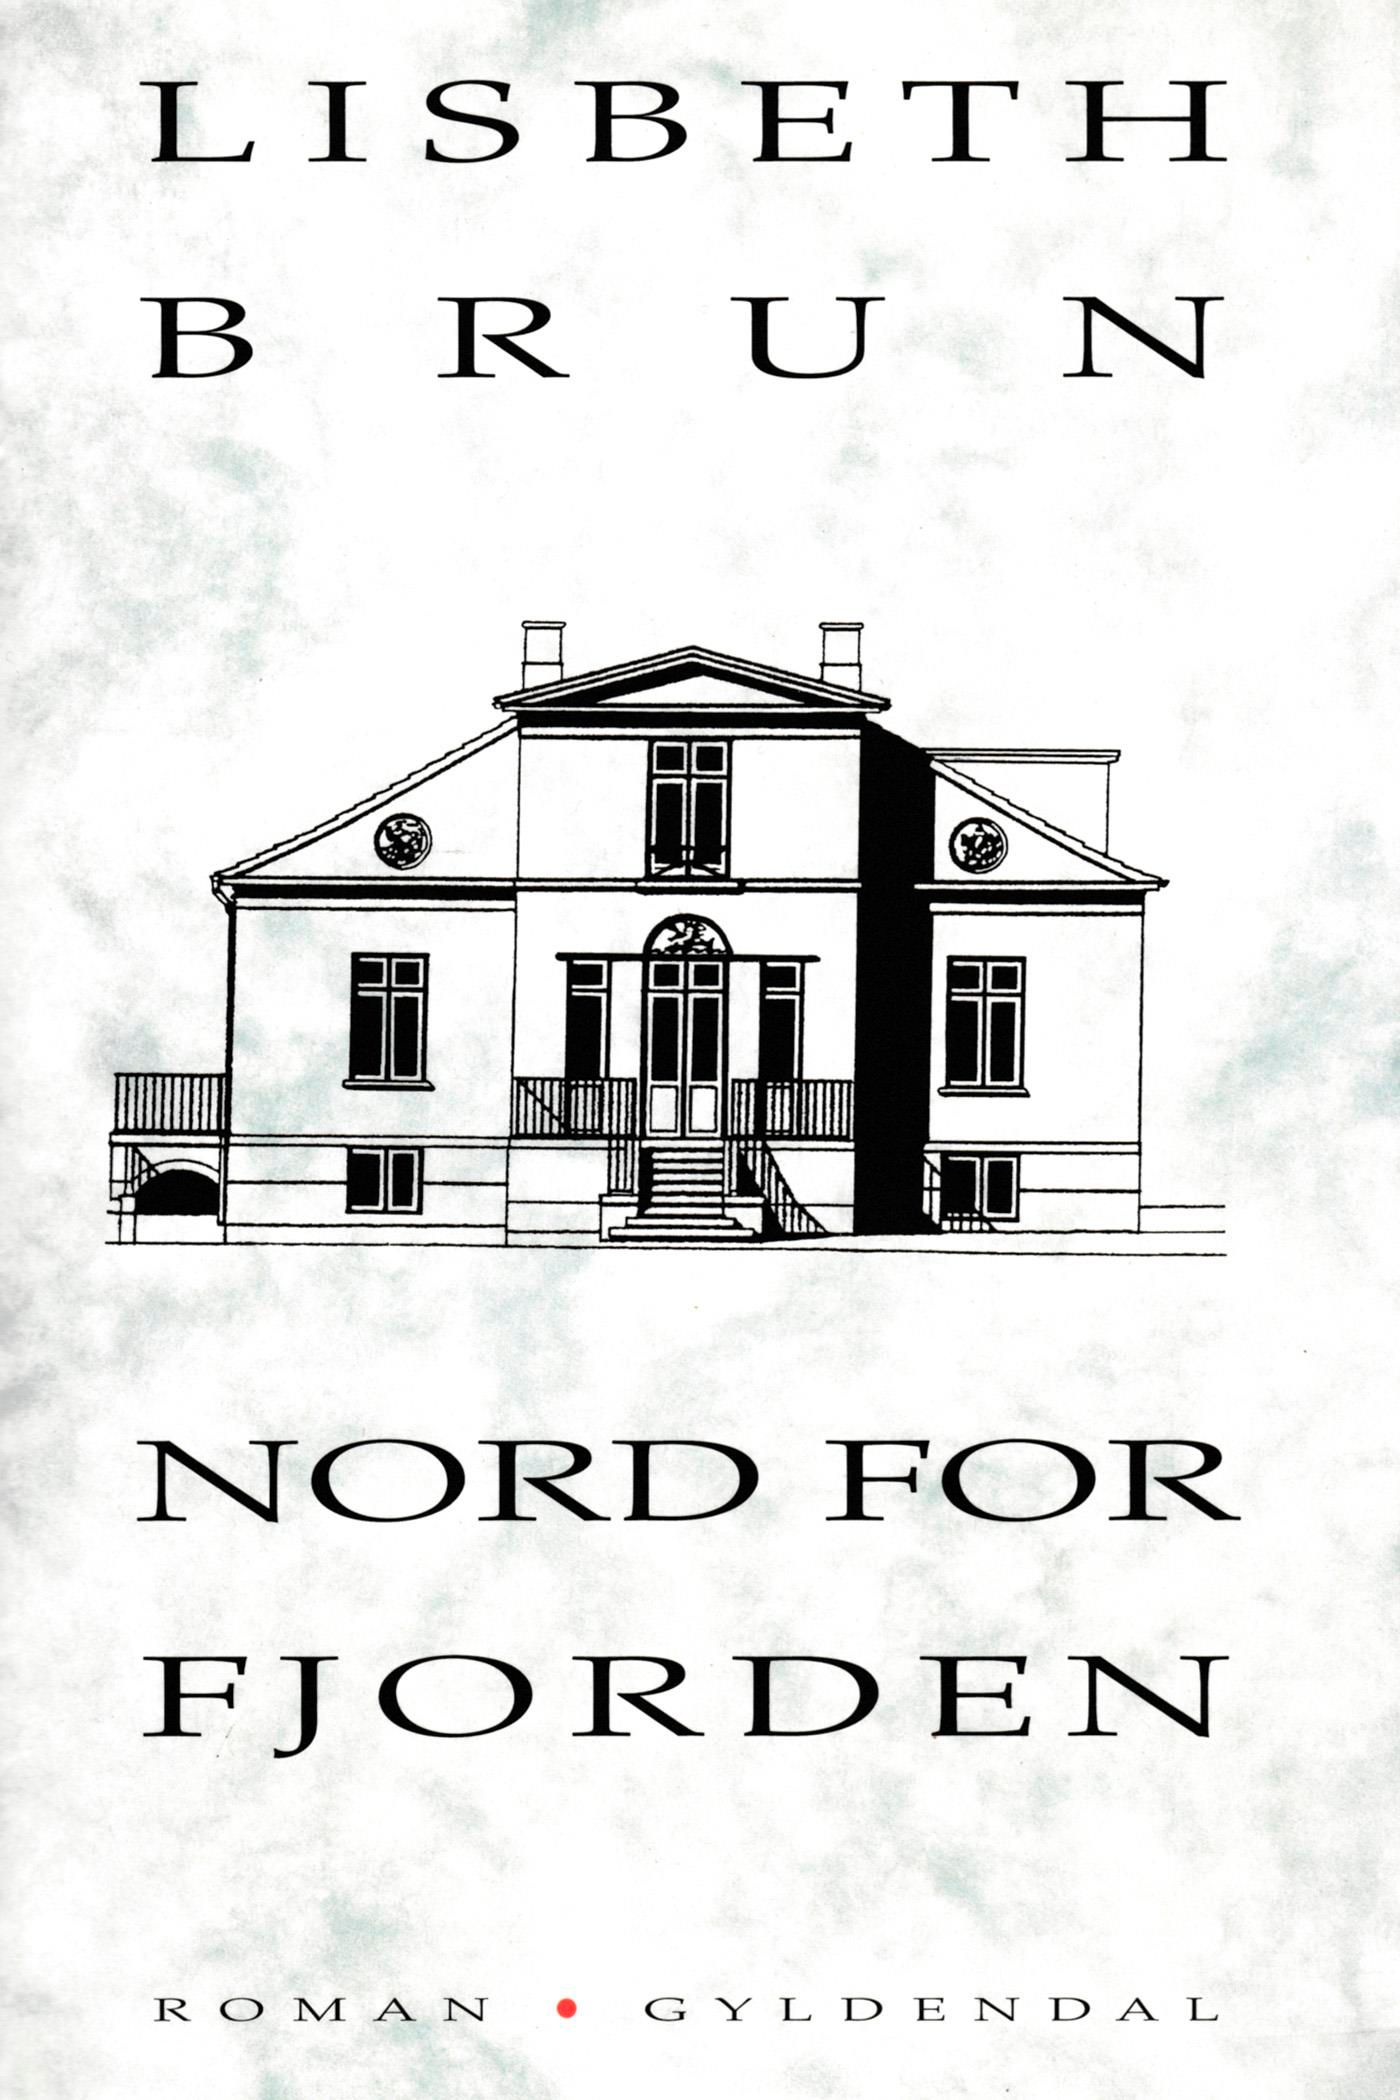 Nord for fjorden, e-bok av Lisbeth Brun